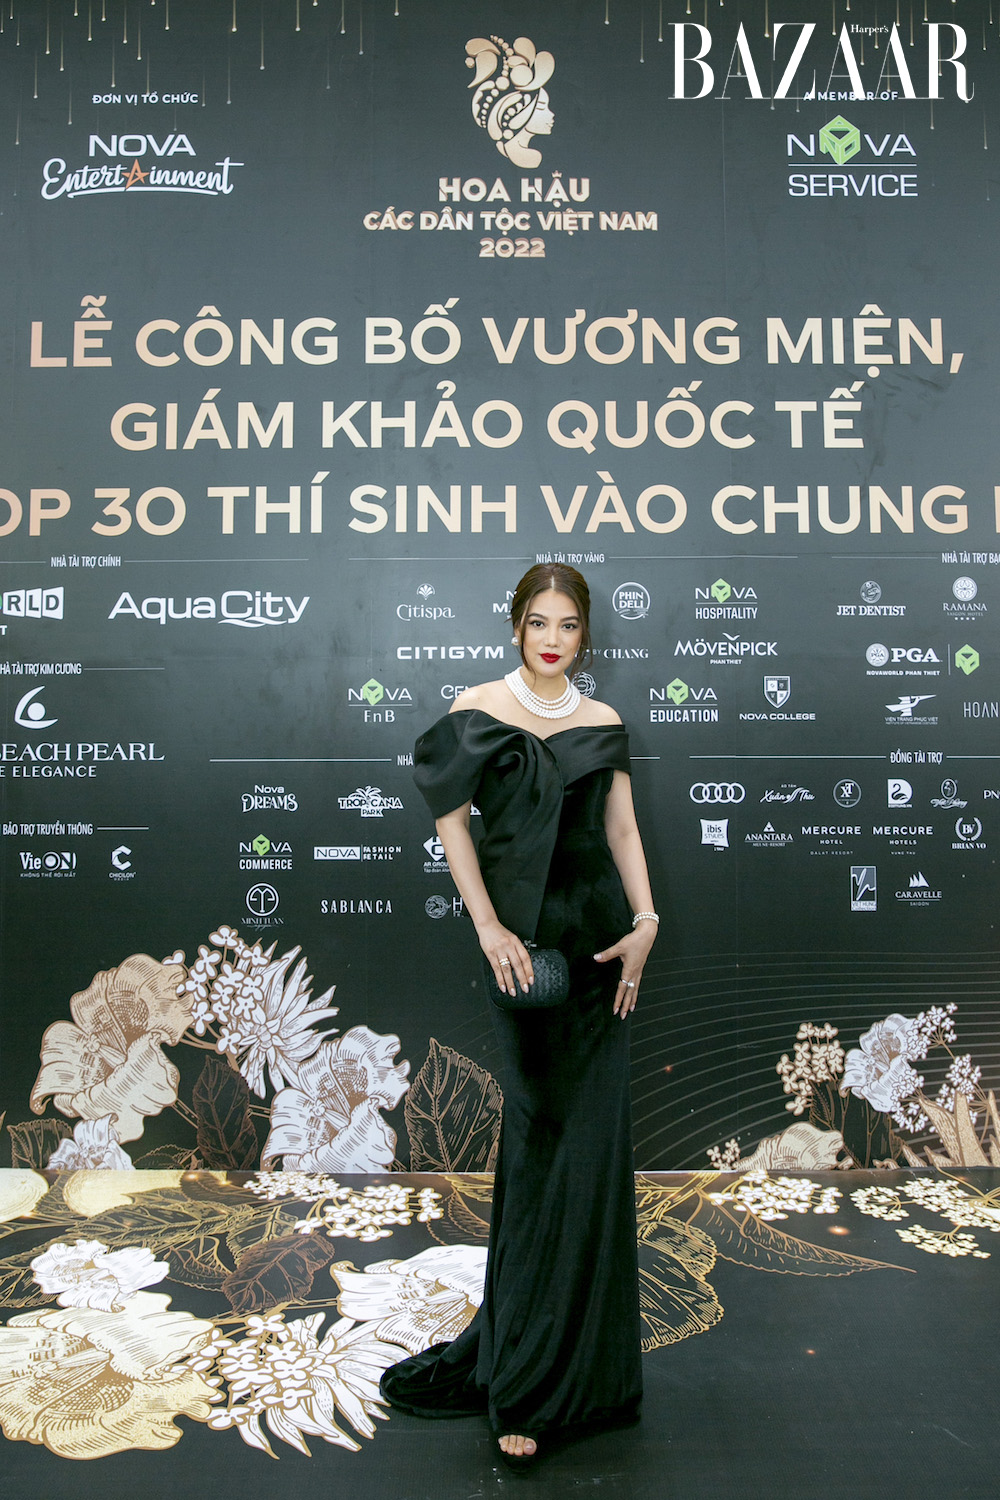 Hoa hau cac dan toc Vietnam 6 - Hai Hoa hậu Trái đất làm giám khảo chung kết Hoa hậu các Dân tộc Việt Nam